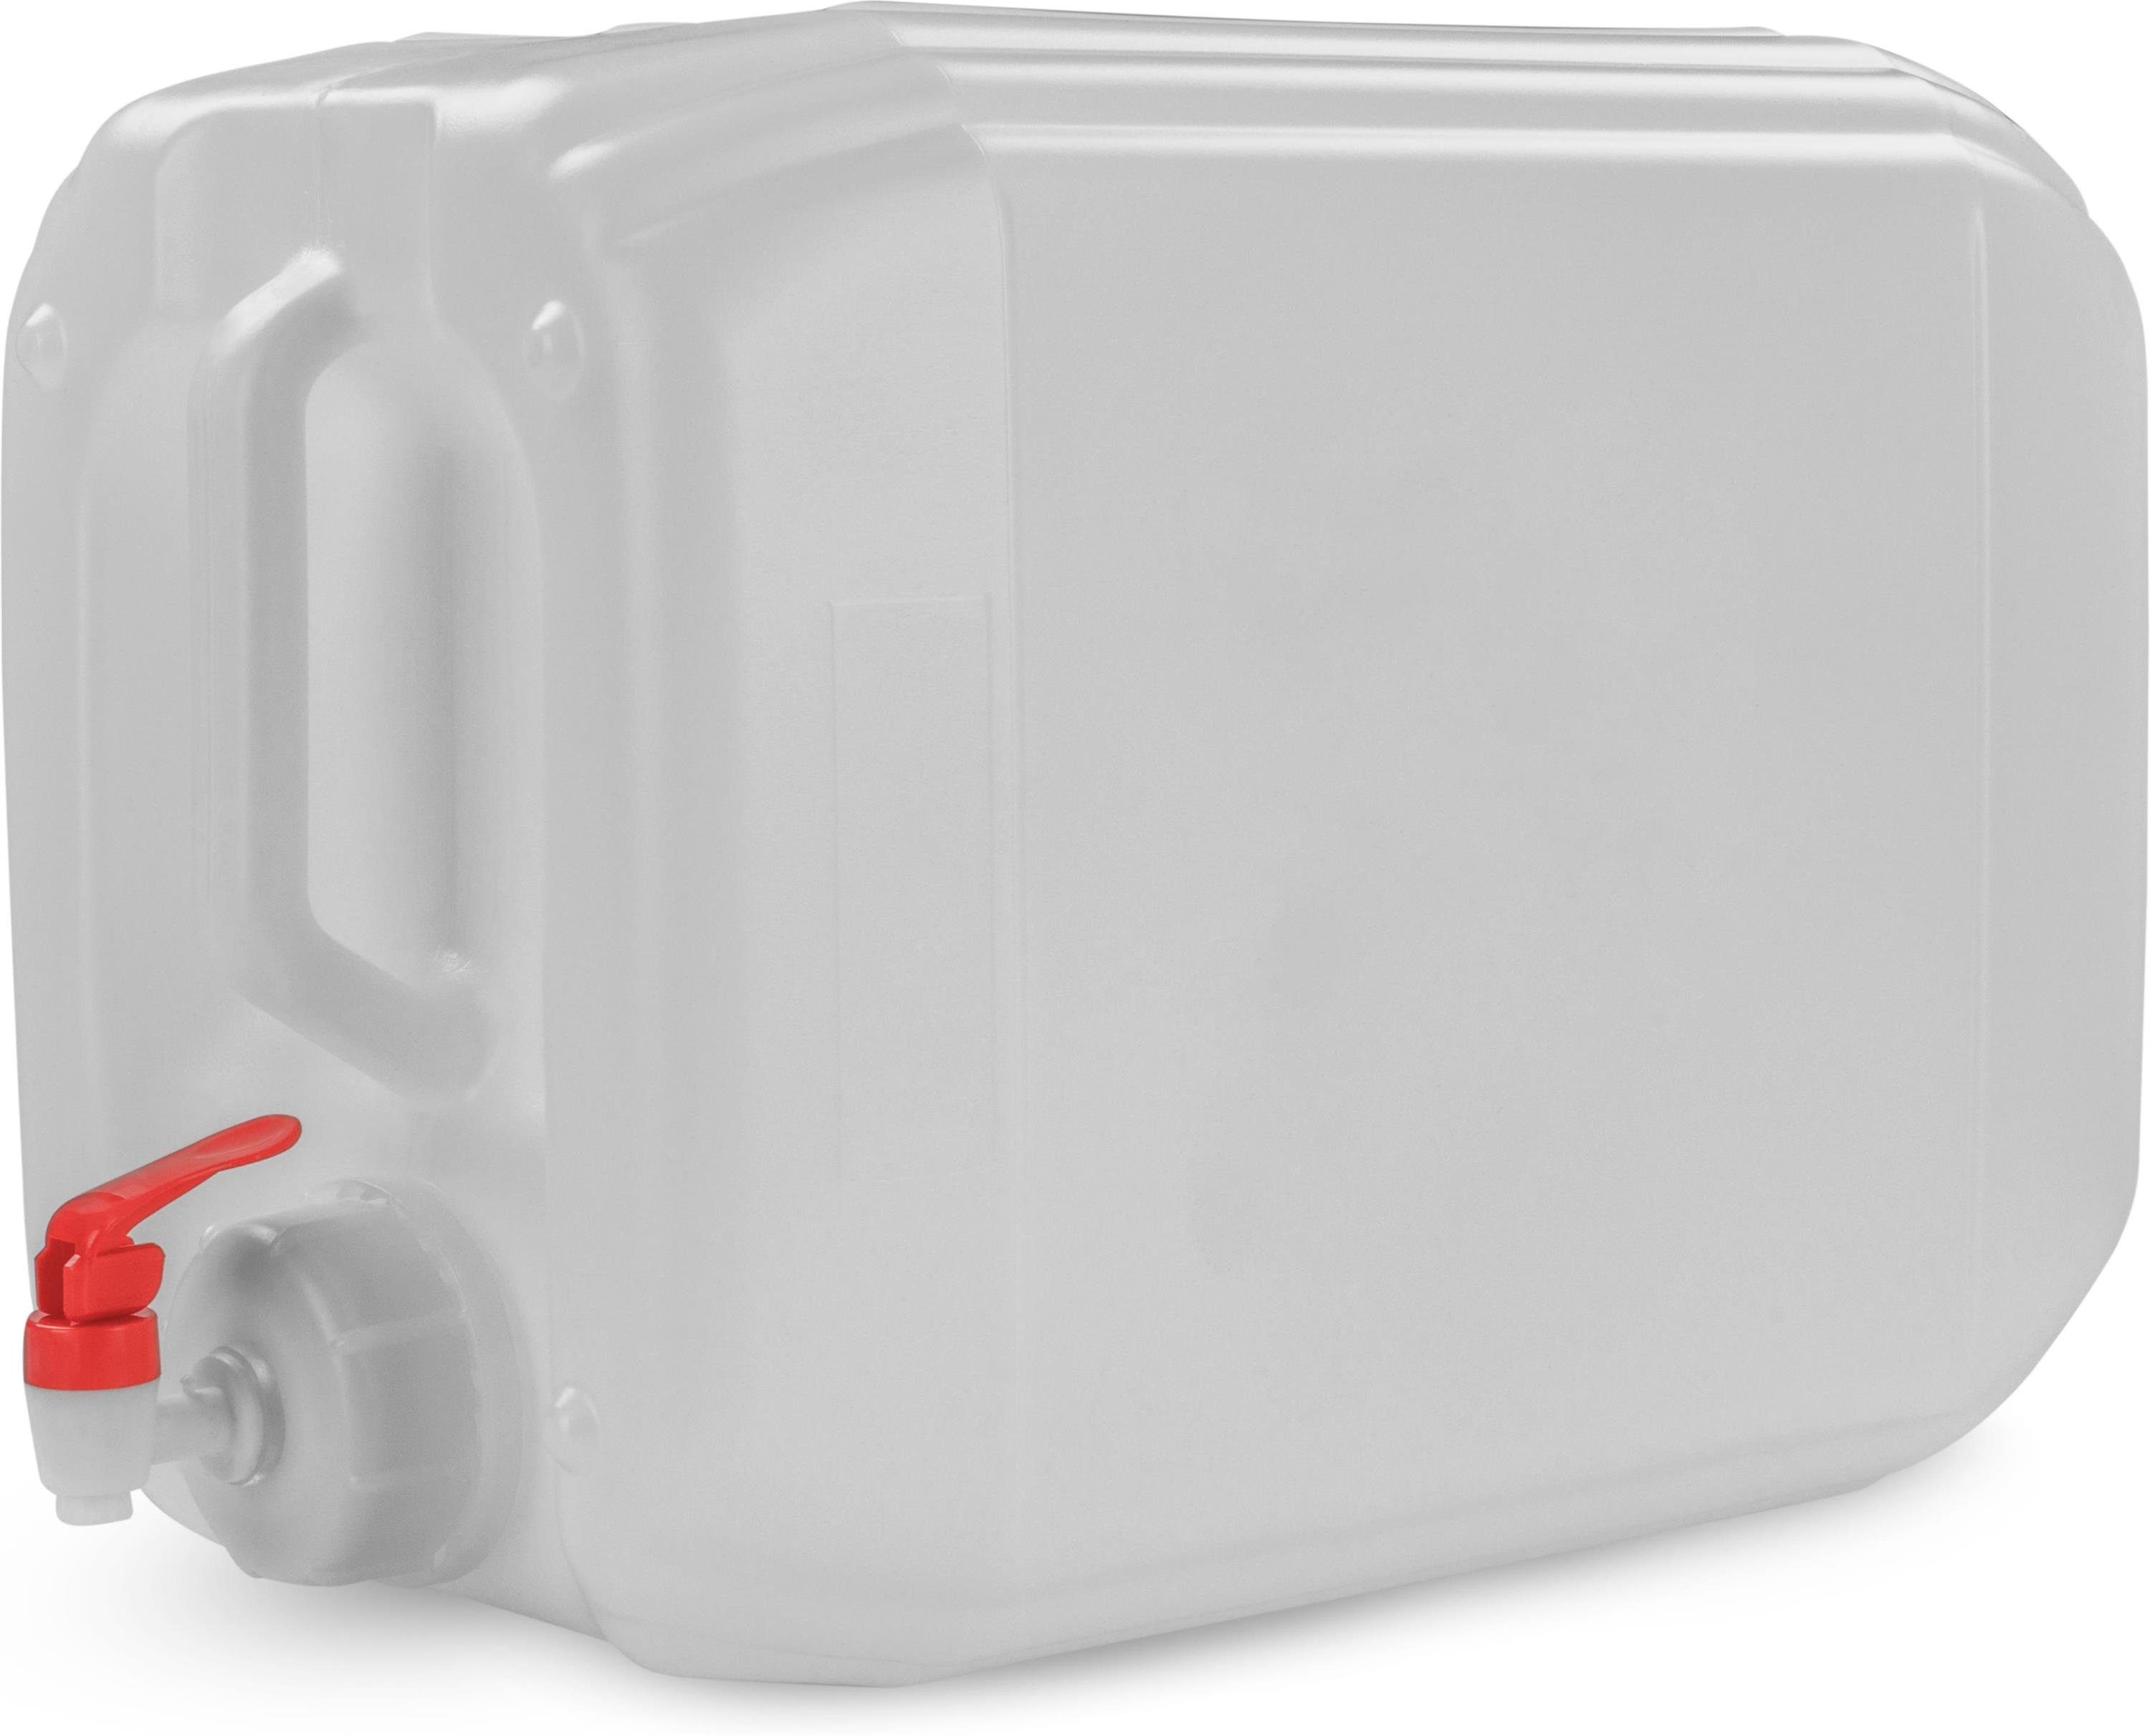 normani Kanister Wasserkanister Carry Wasserbehälter Lebensmittelecht St), Campingkanister Trinkwasserkanister Hahn Outdoorkanister Liter 20 mit (1